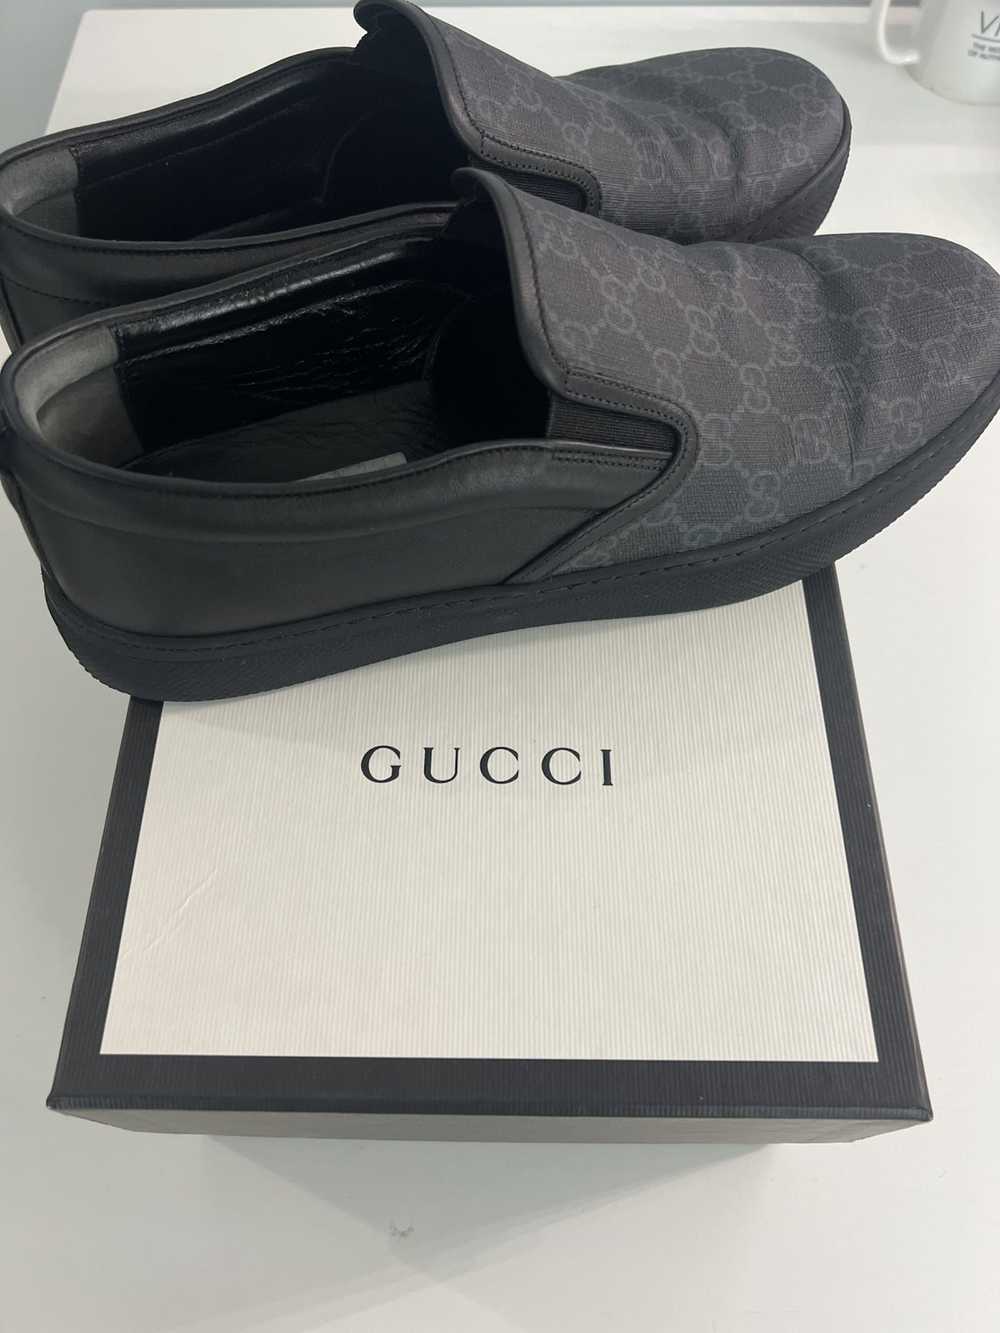 Gucci Gucci Dublin GG Supreme Black - image 1